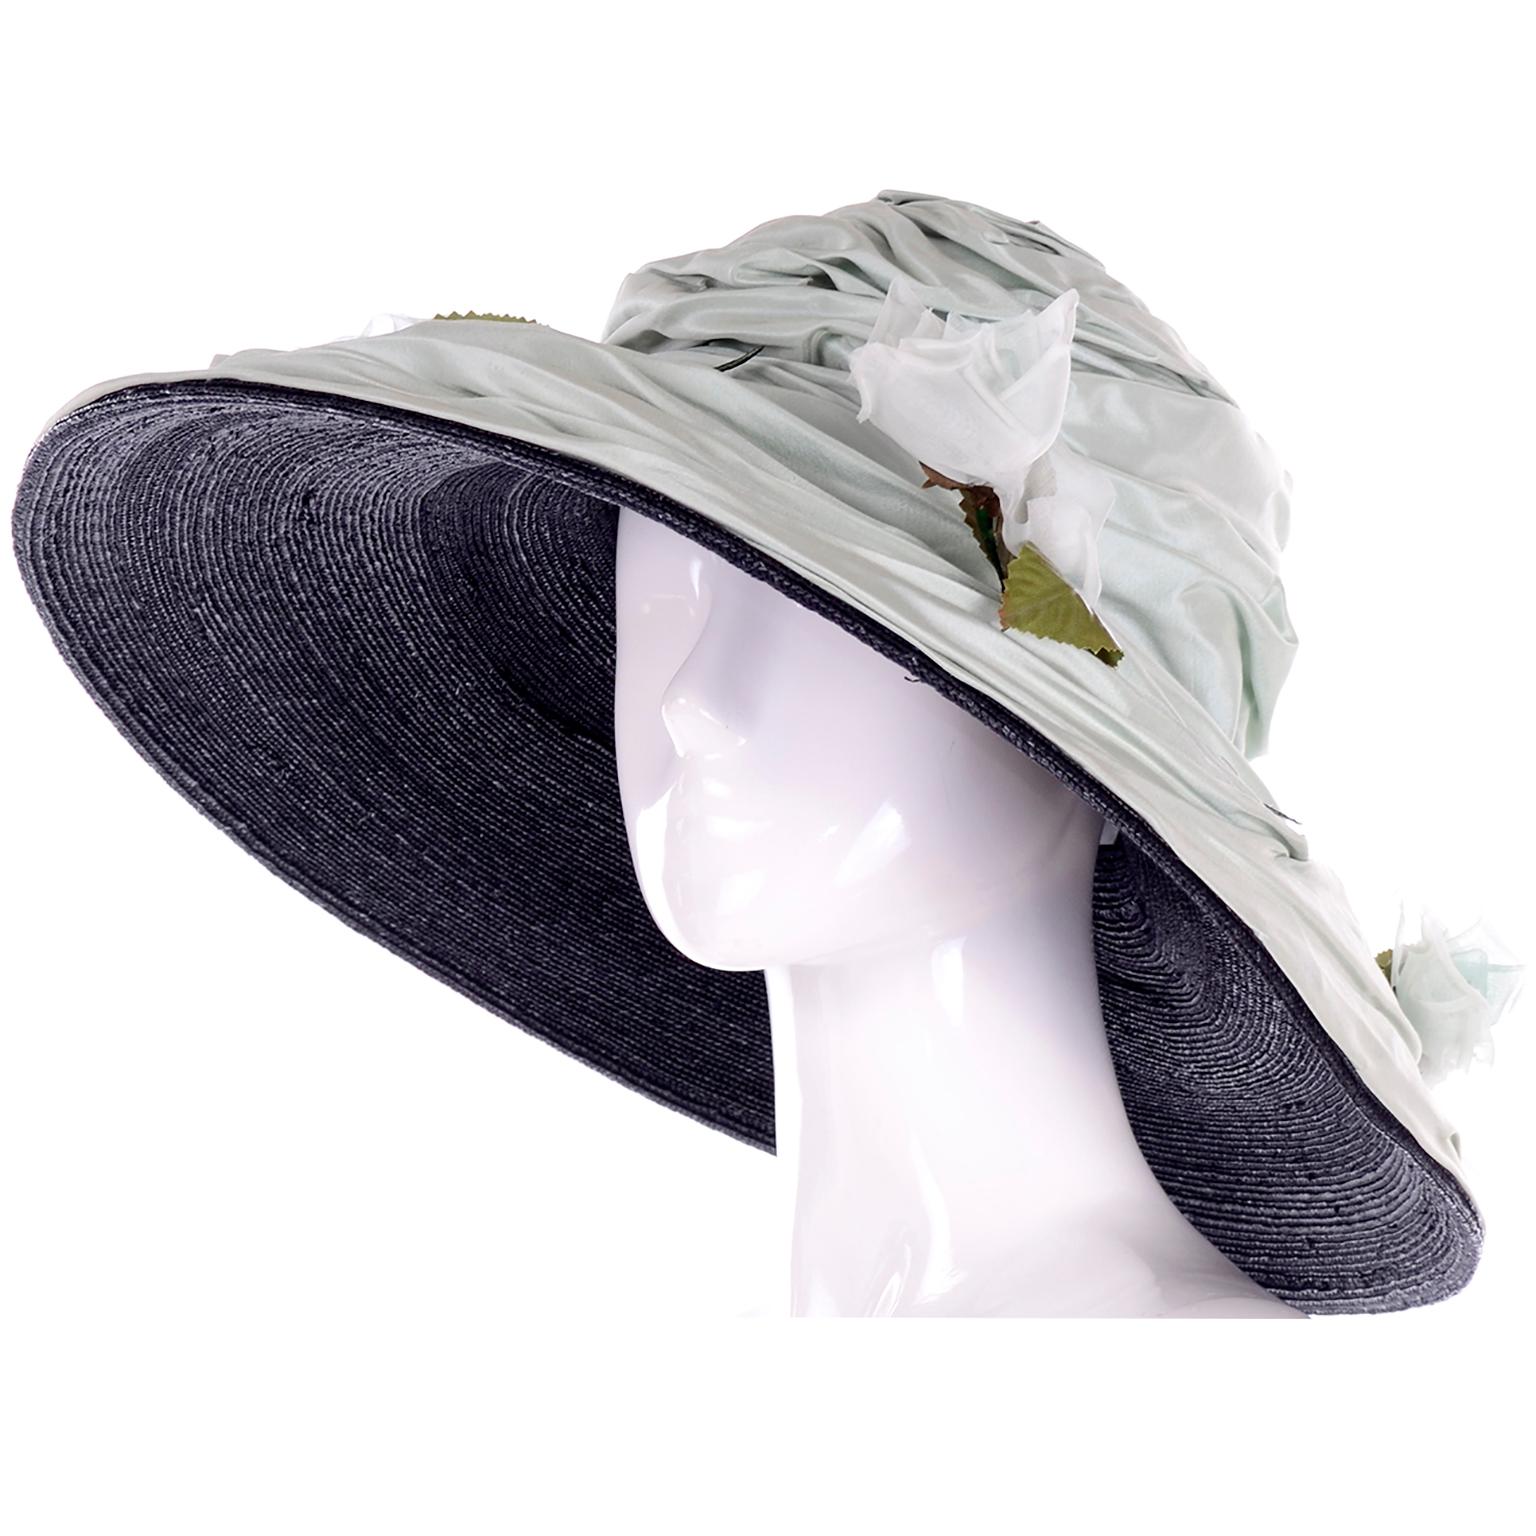 Dieser unglaubliche Hut mit breiter Krempe wurde von der bekannten Londoner Hutmacherin Rachel Trevor Morgan entworfen. Rachel Trevor Morgan hat Hüte für die königliche Familie entworfen und ihre Hüte in Bergdorf Goodman, Harrods und anderen